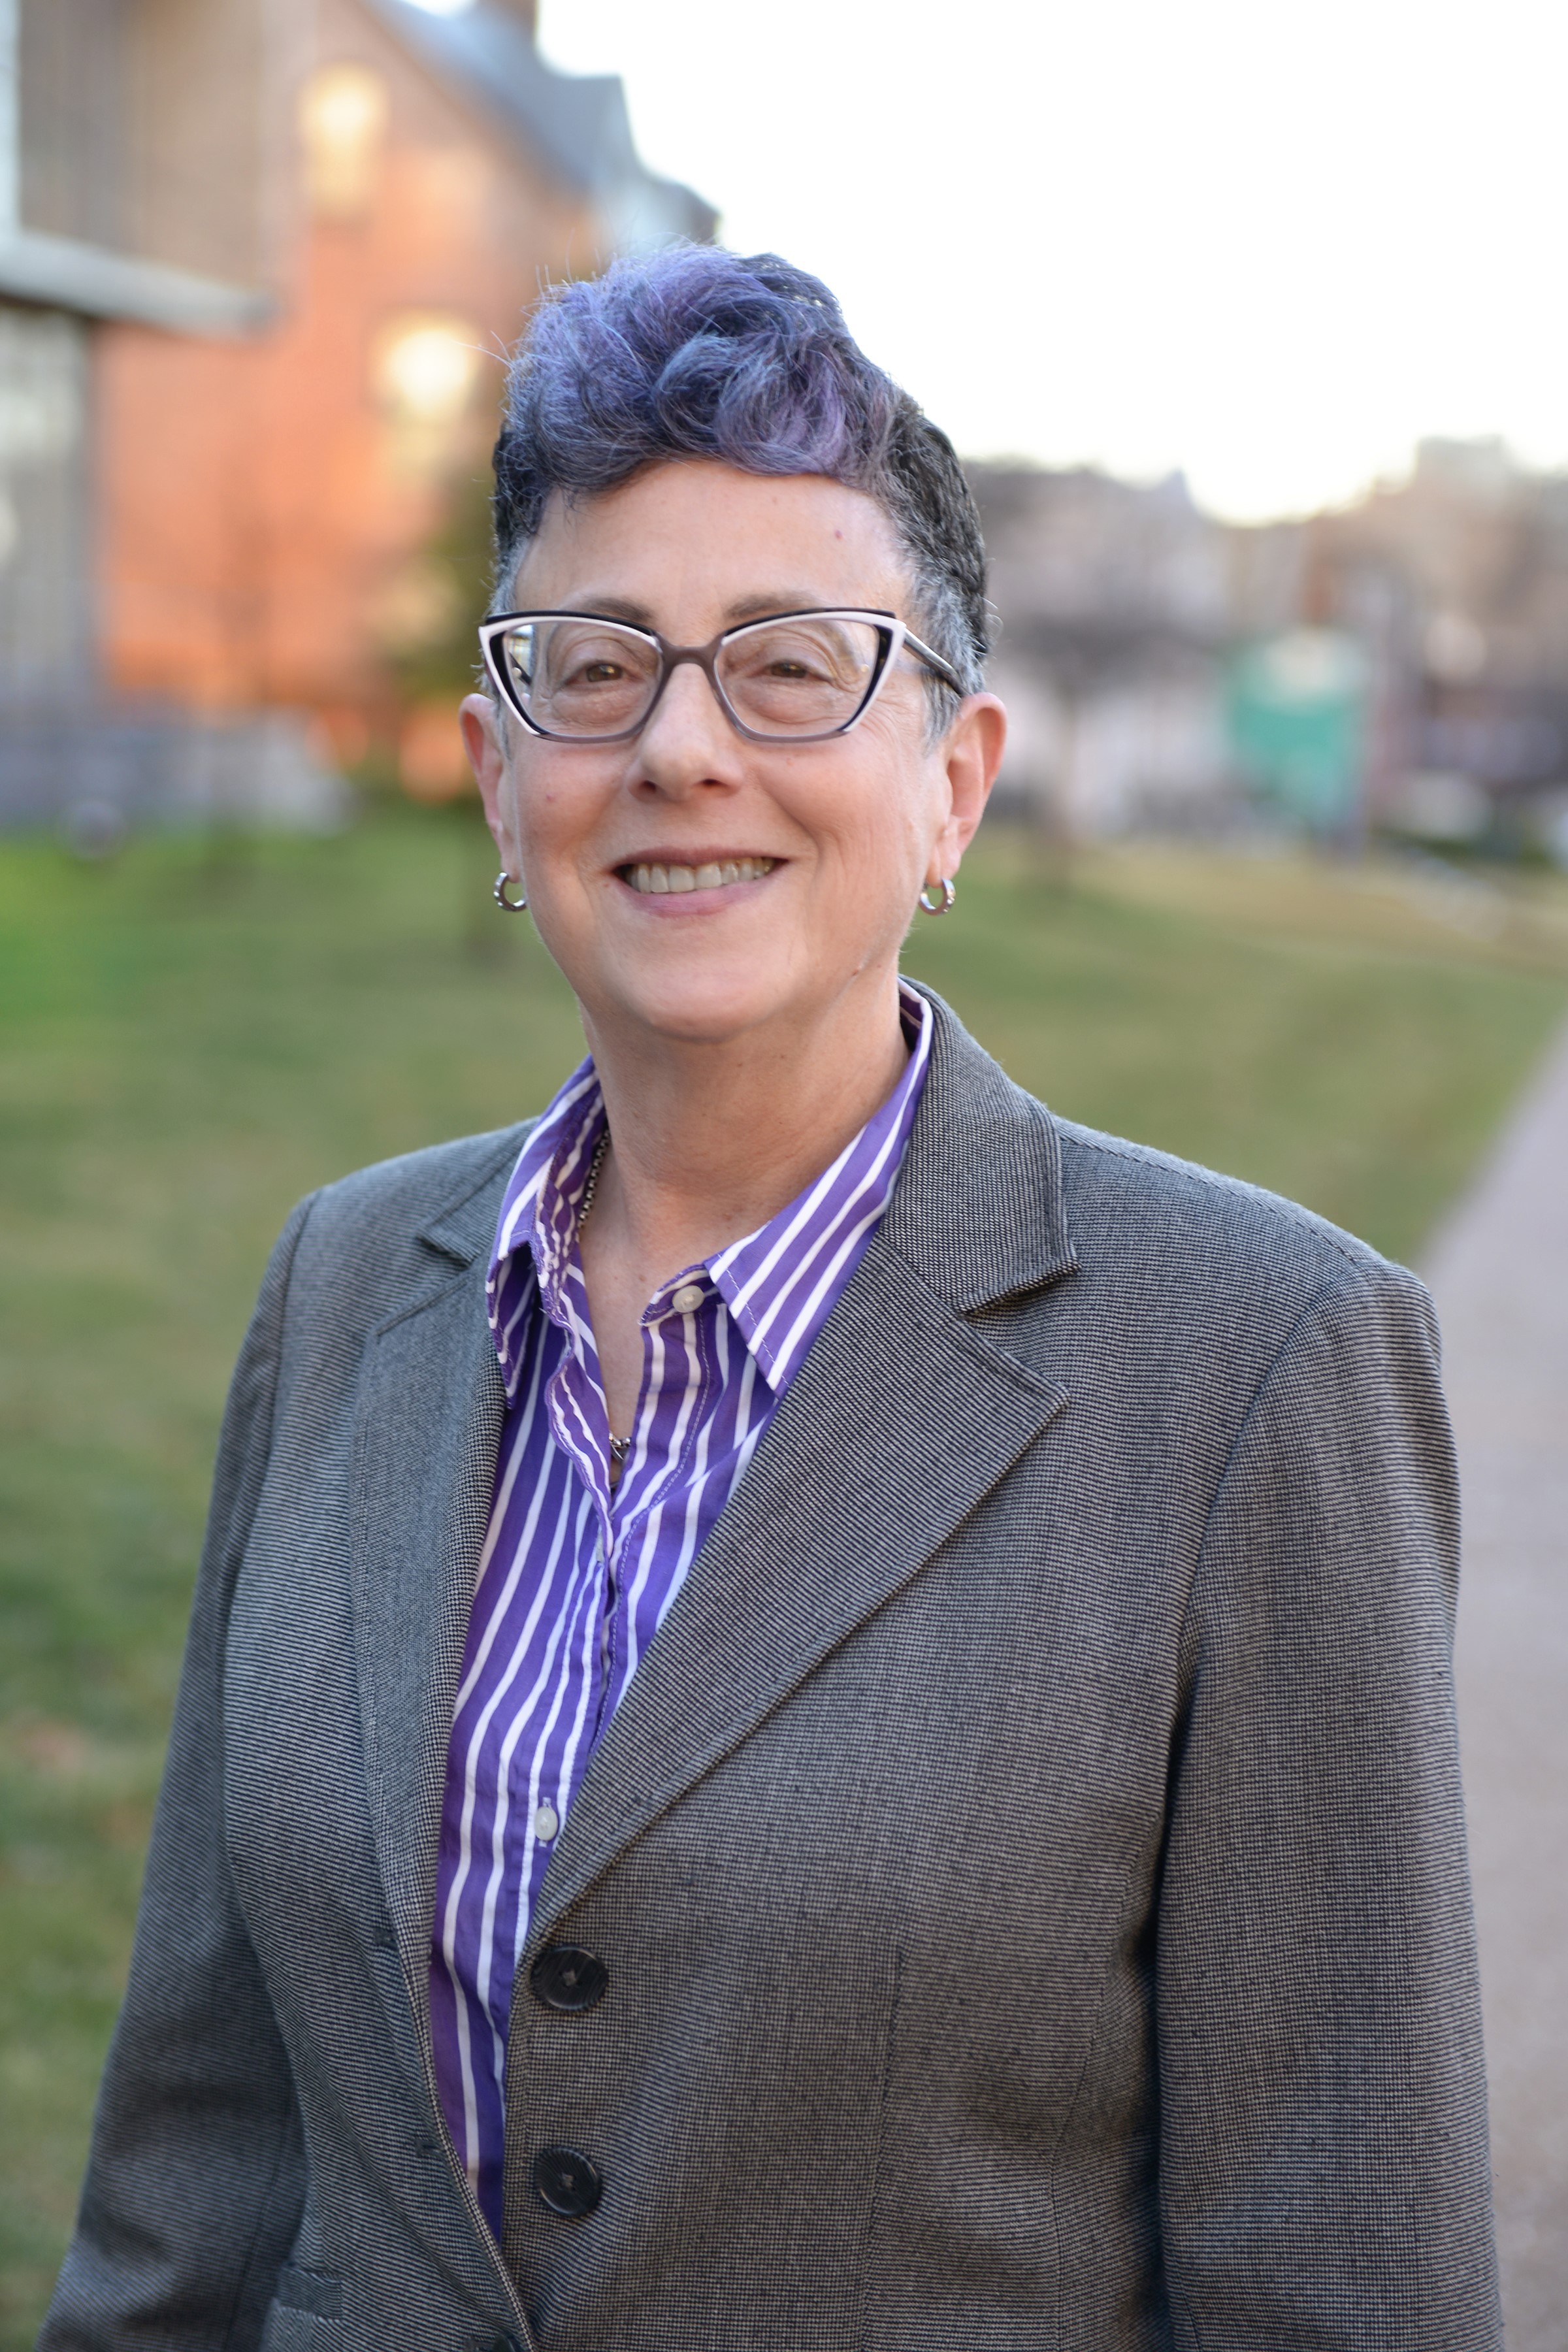 Dr. Lori Baron